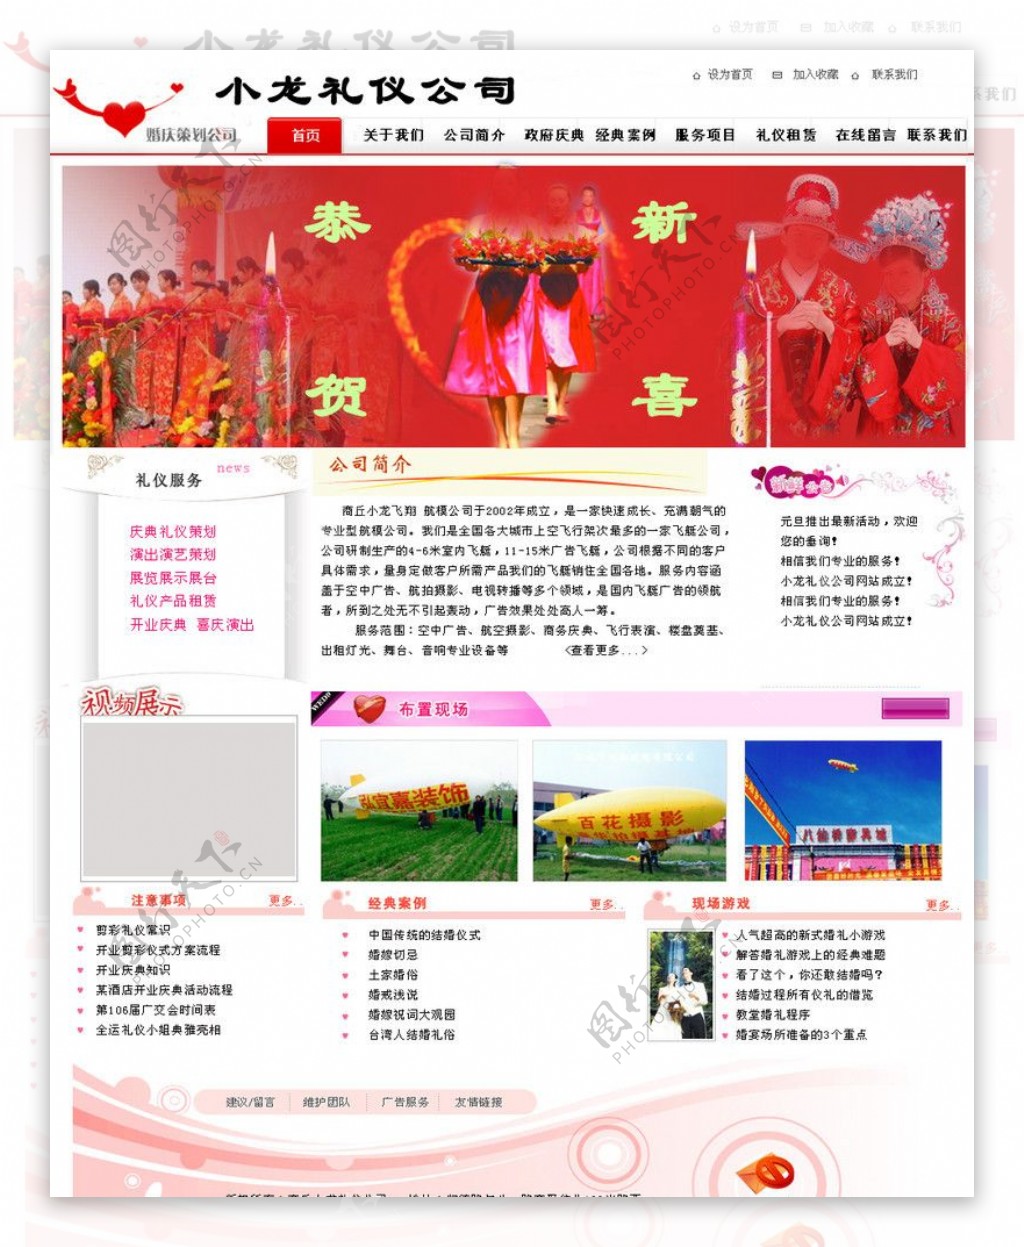 婚庆礼仪公司的网站模板图片